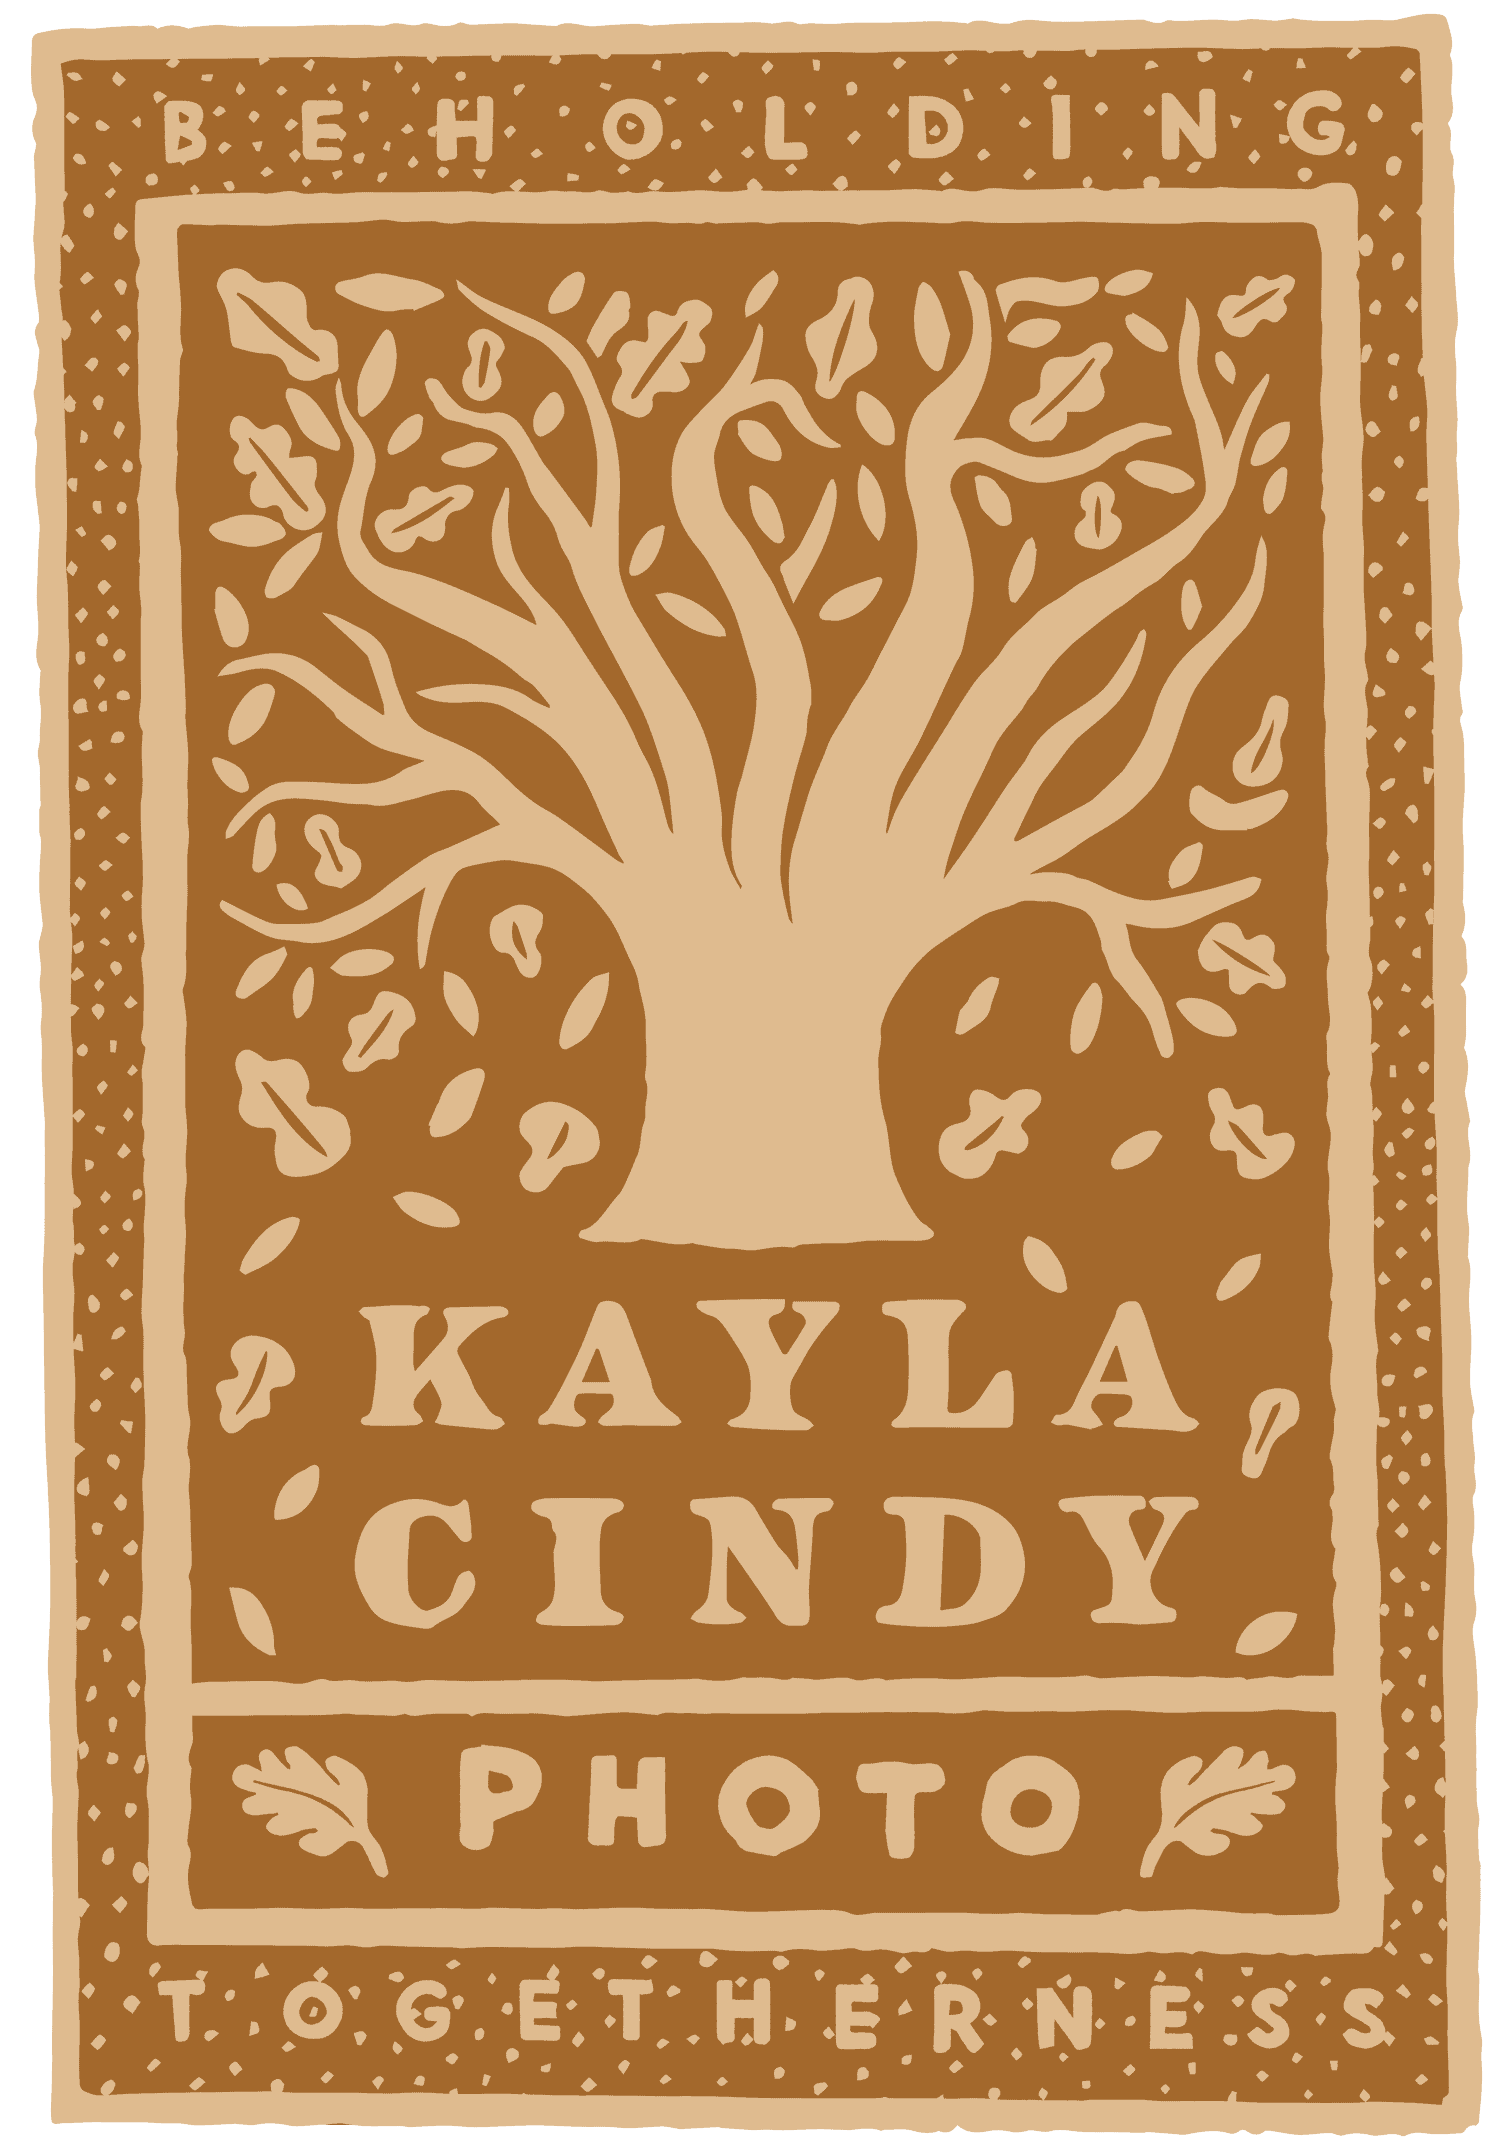 Kayla Cindy Photo - Bend Oregon Wedding Photographer